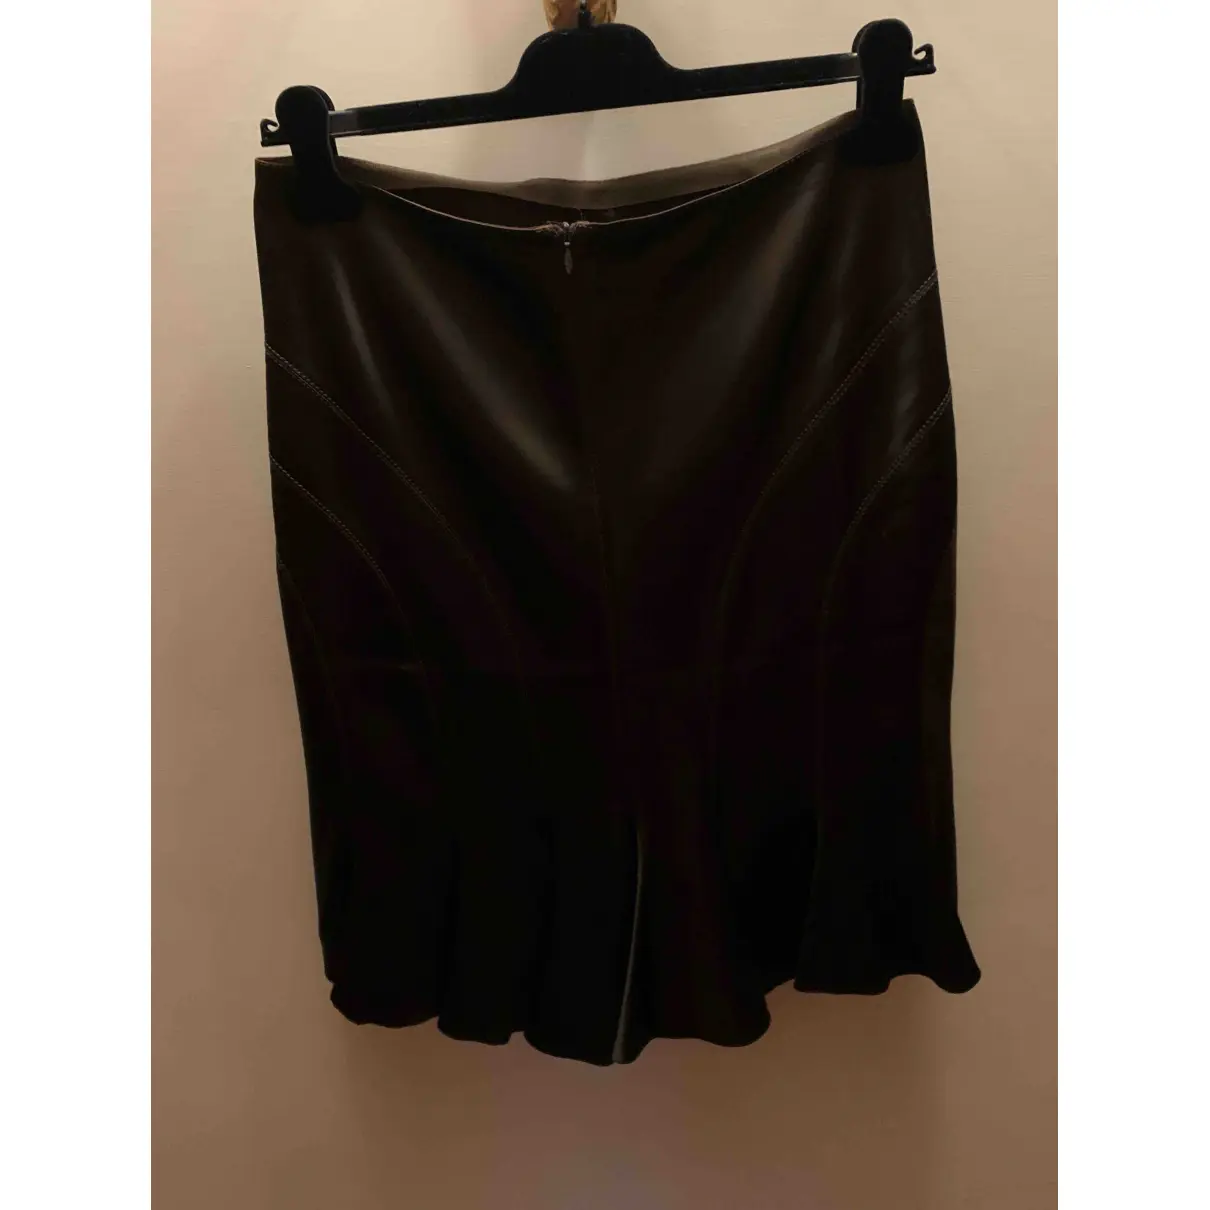 Buy Anna Molinari Mid-length skirt online